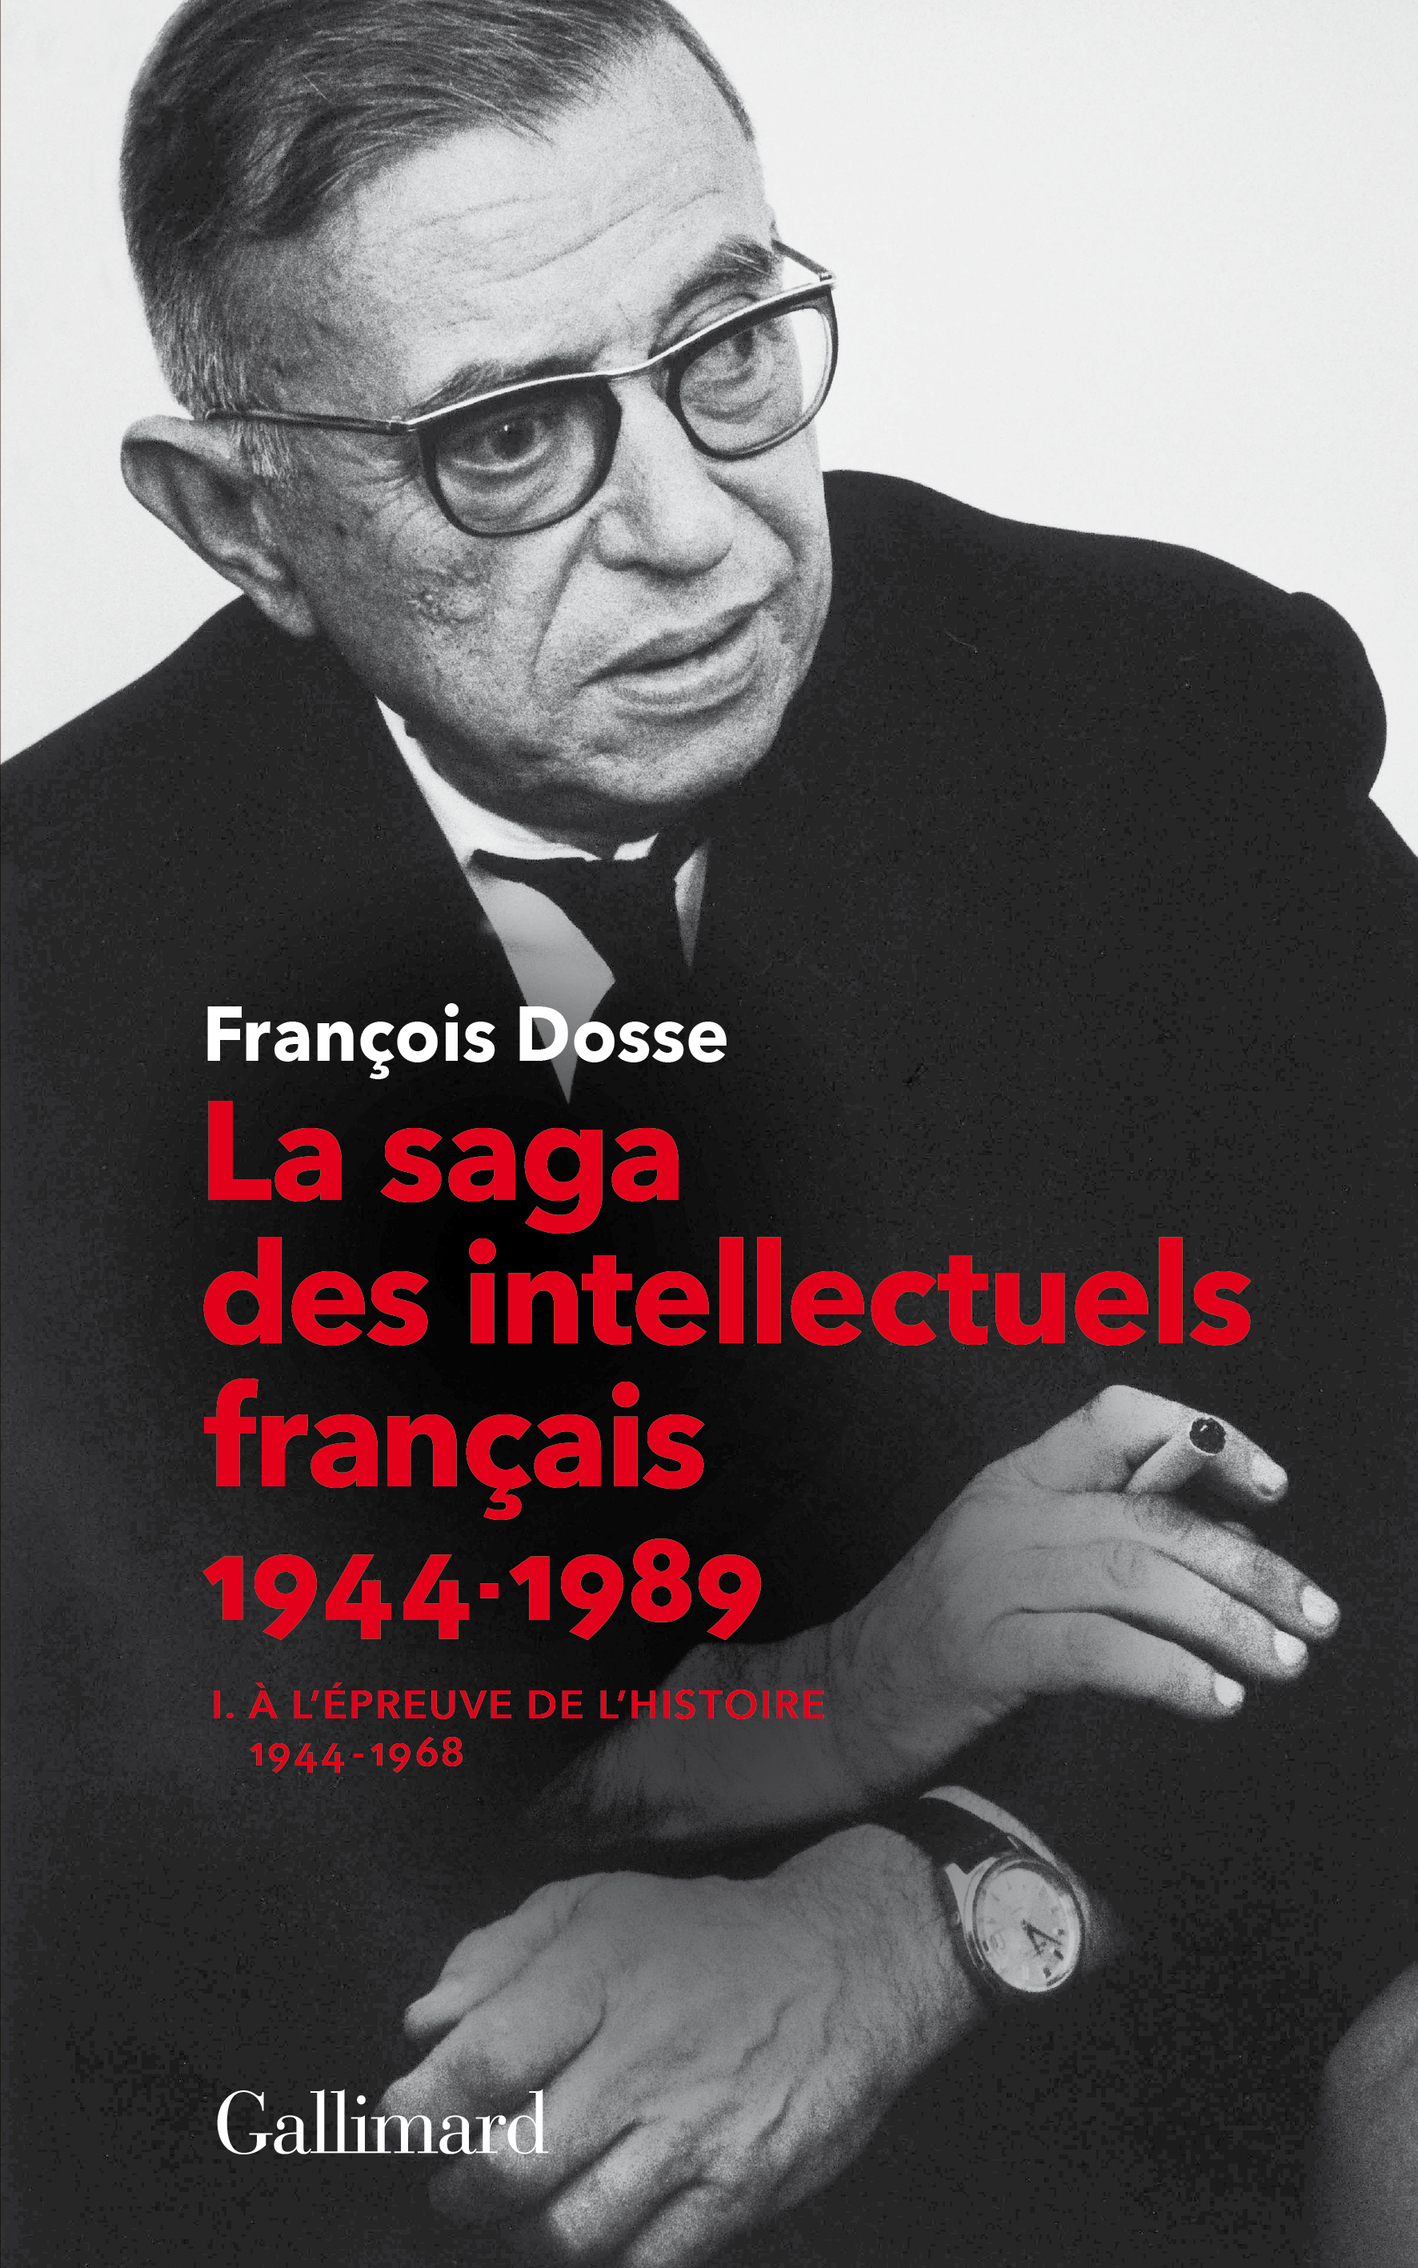 La saga des intellectuels français